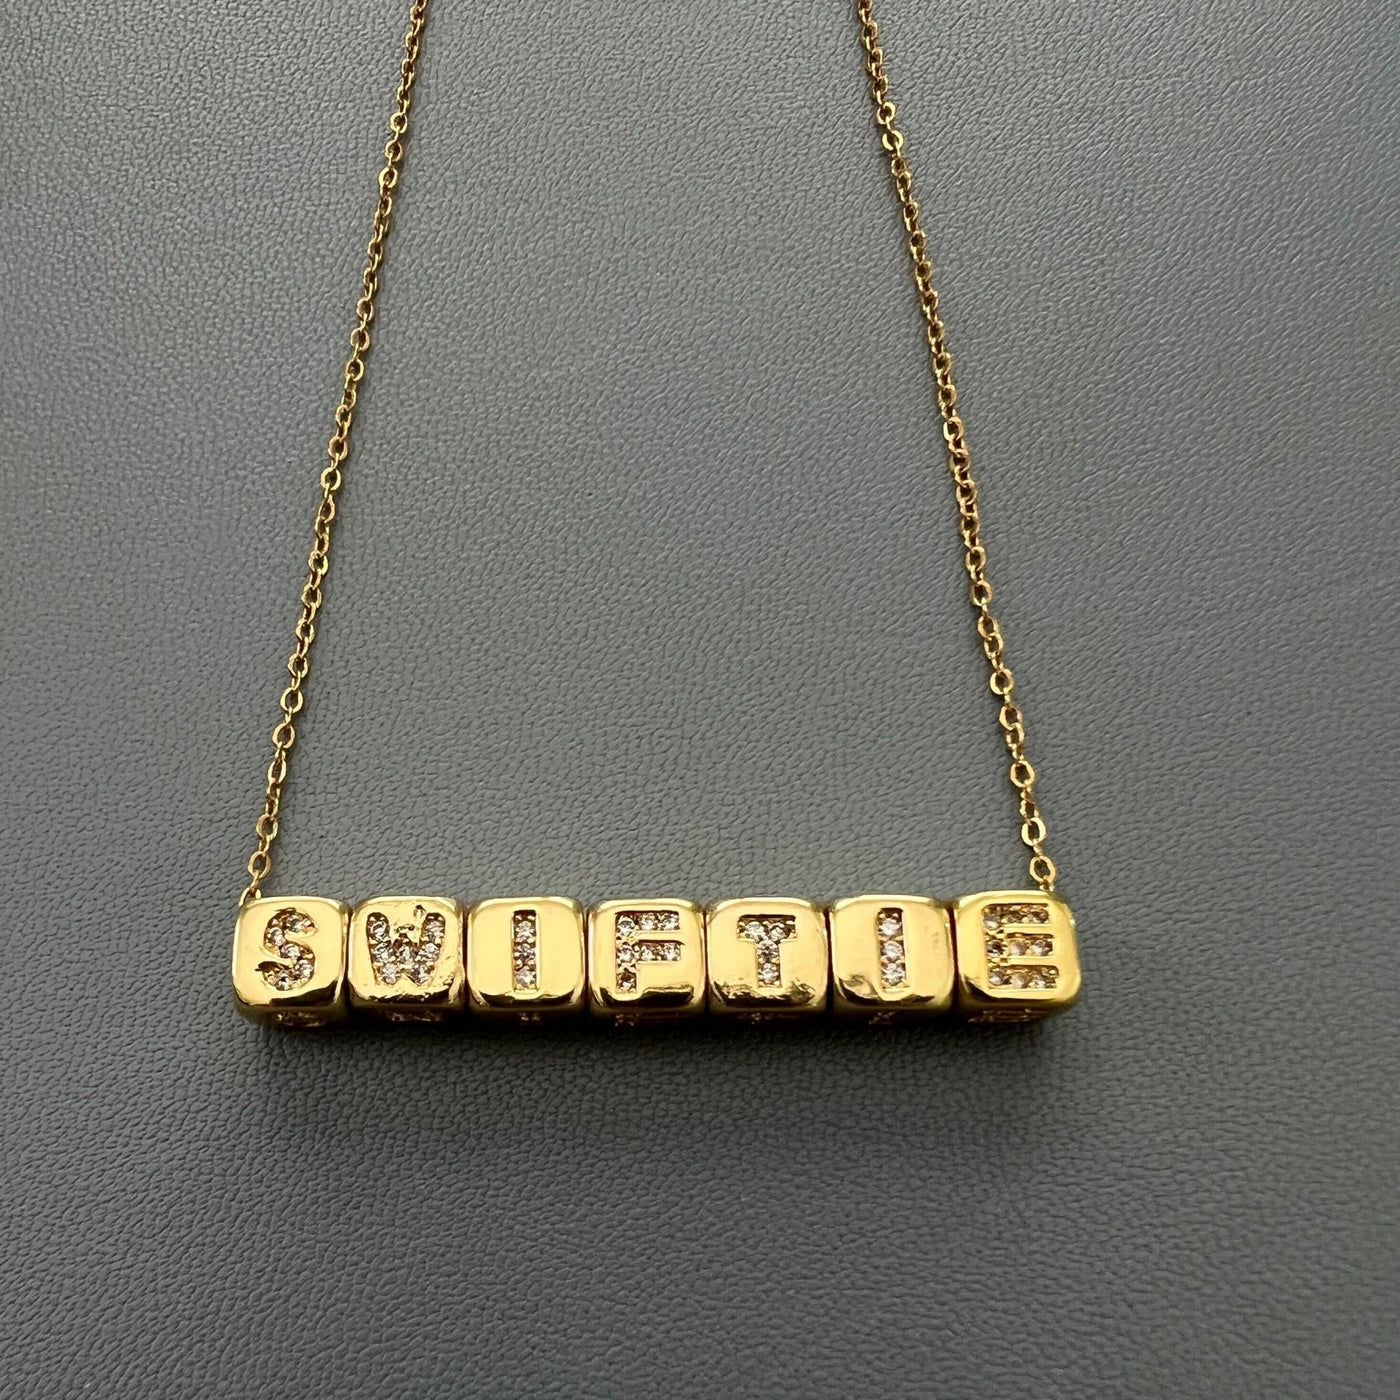 Mini Bling Blocks for Necklace or Bracelet (6mm) - Capsul